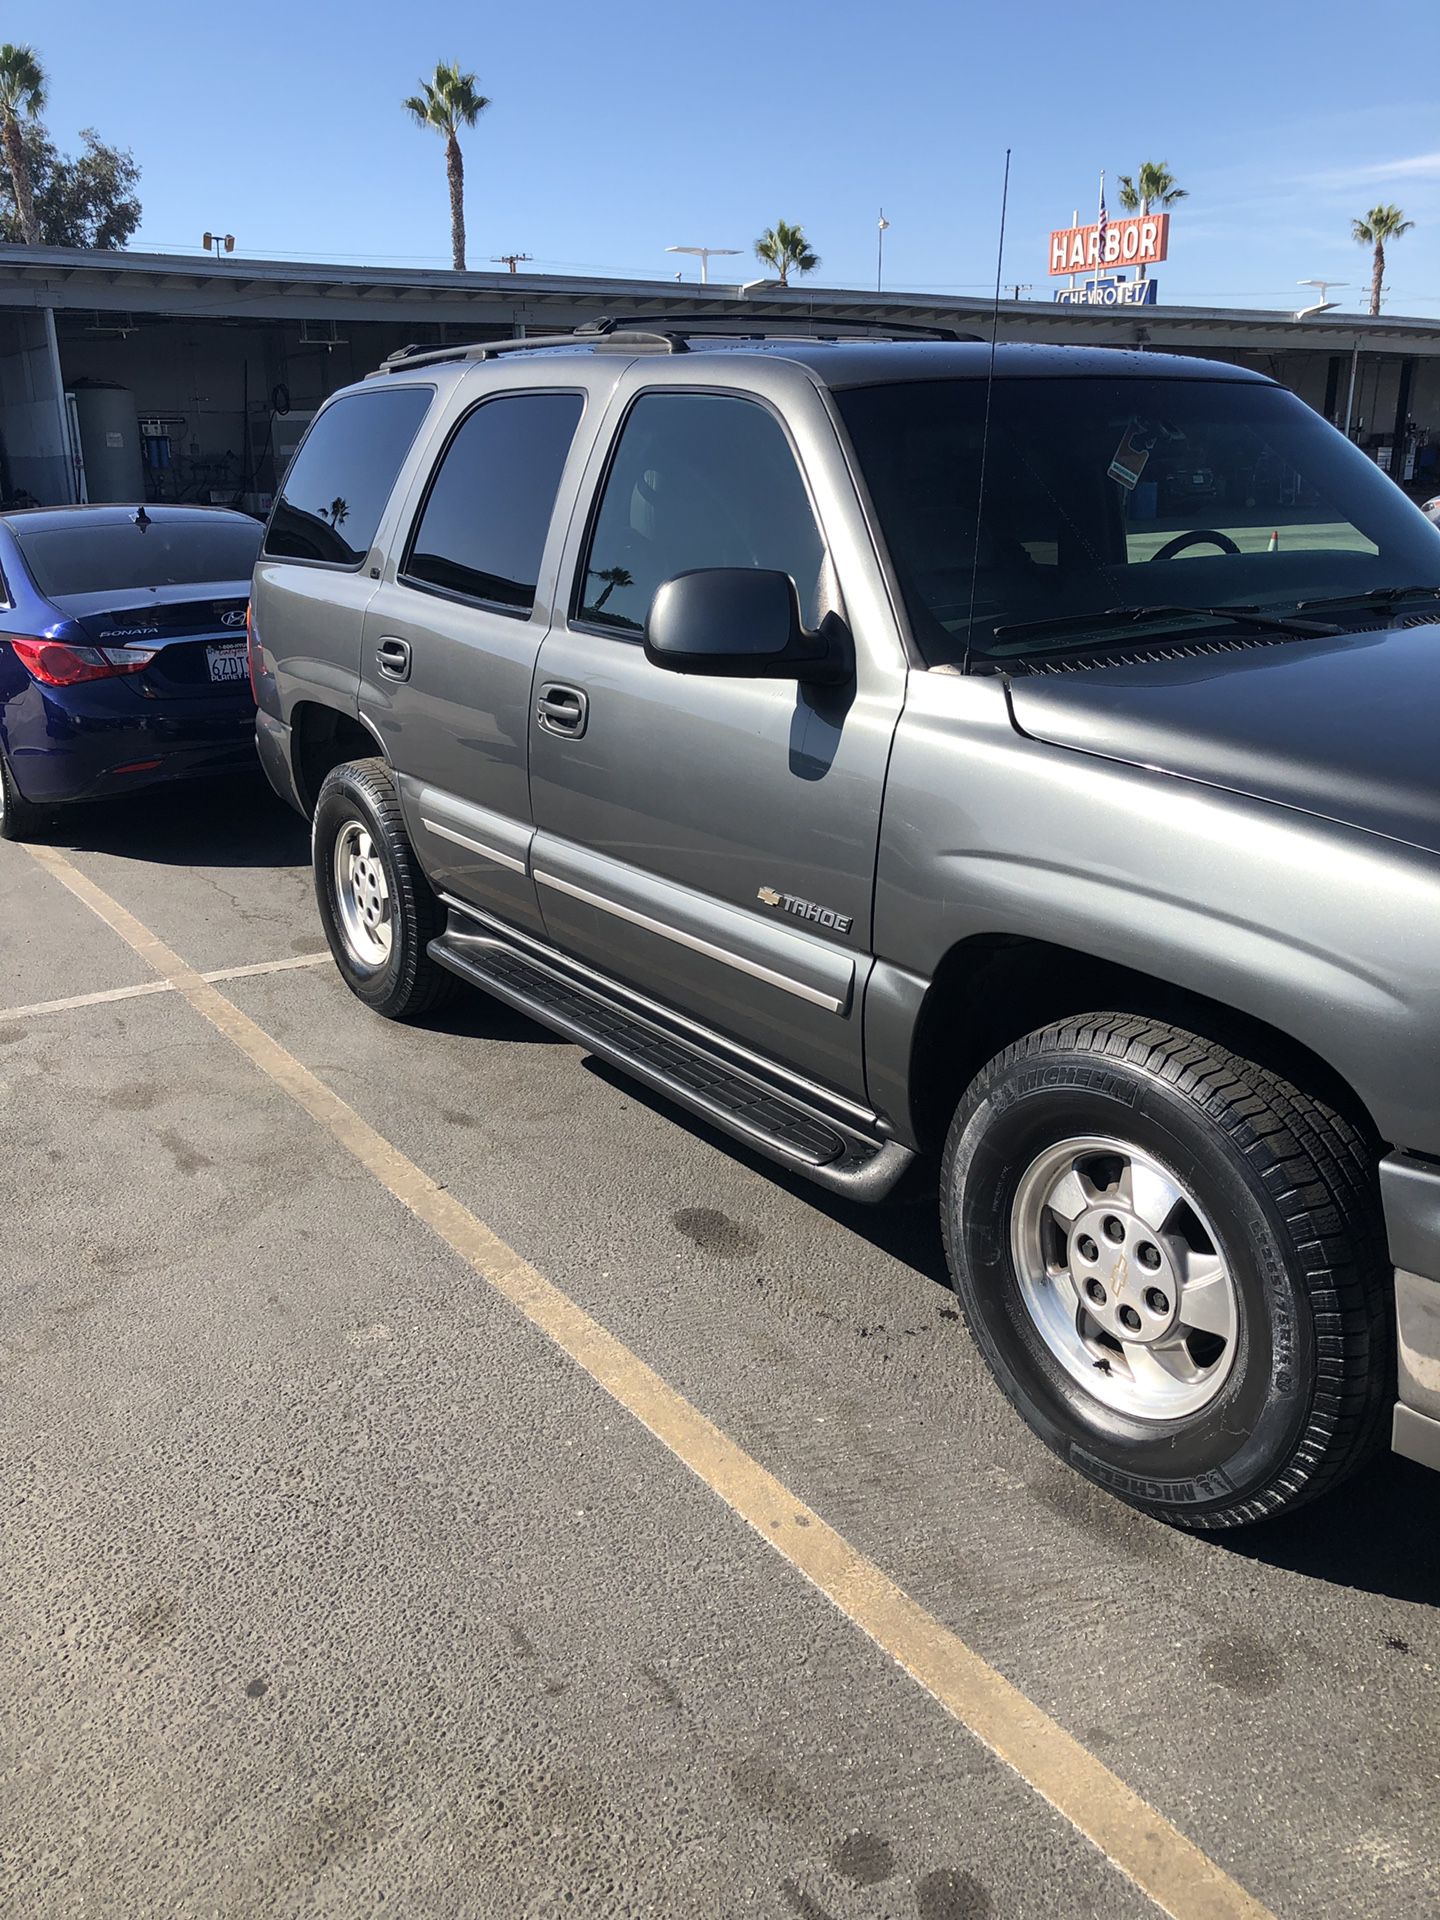 2001 Chevrolet Tahoe